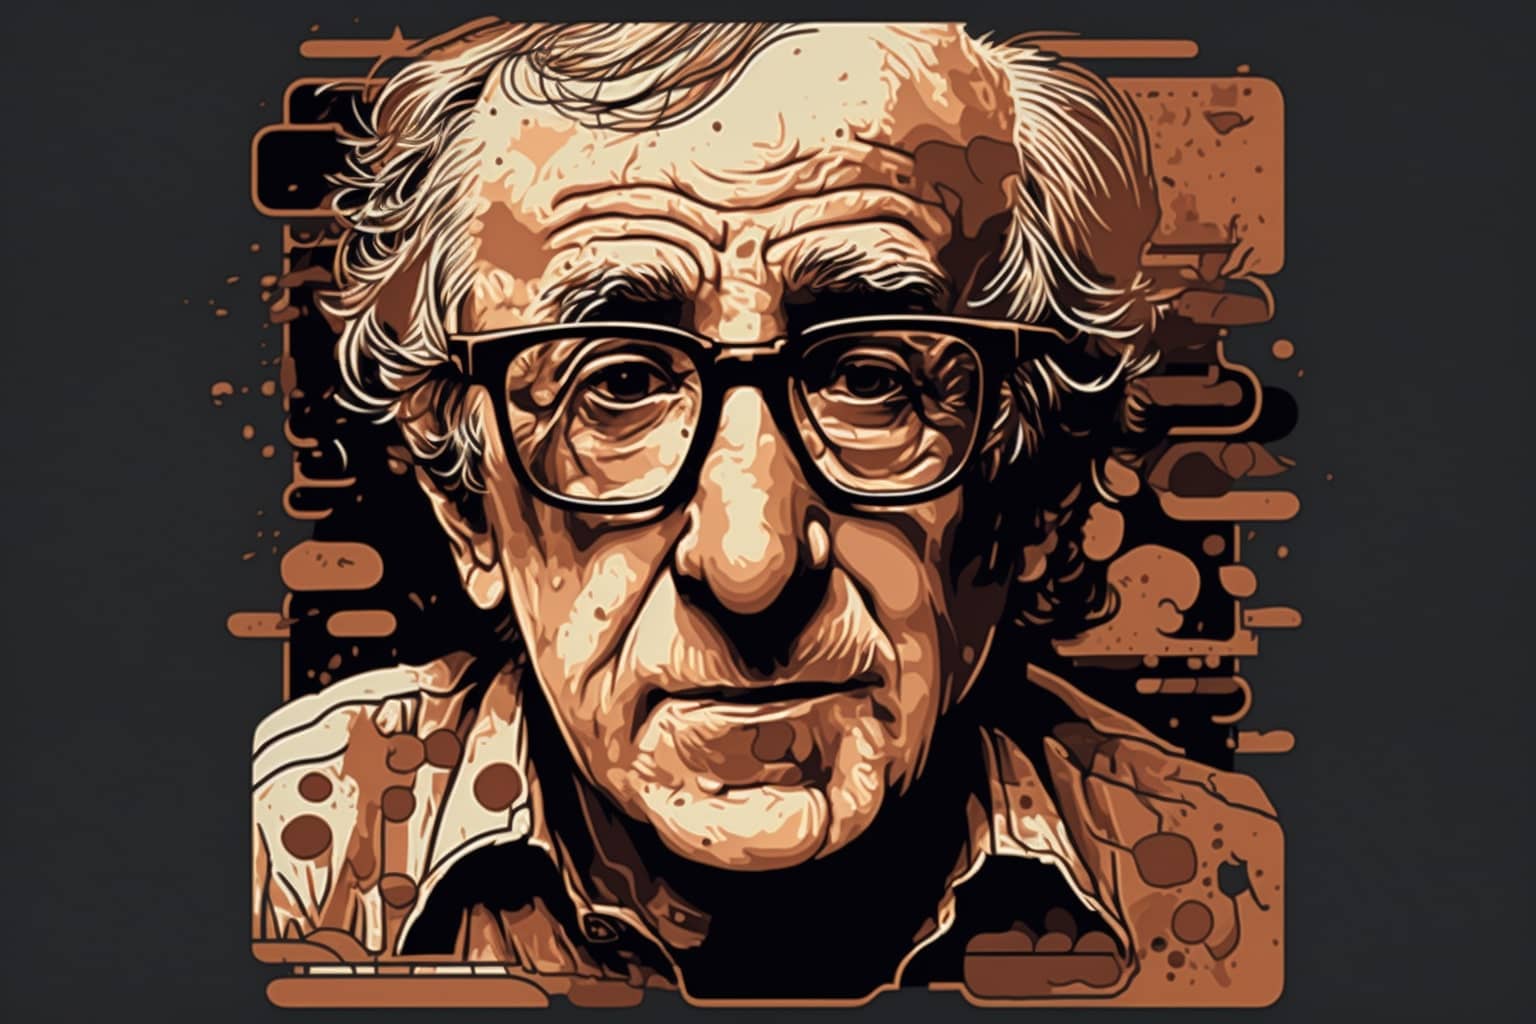 Woody Allen Net Worth